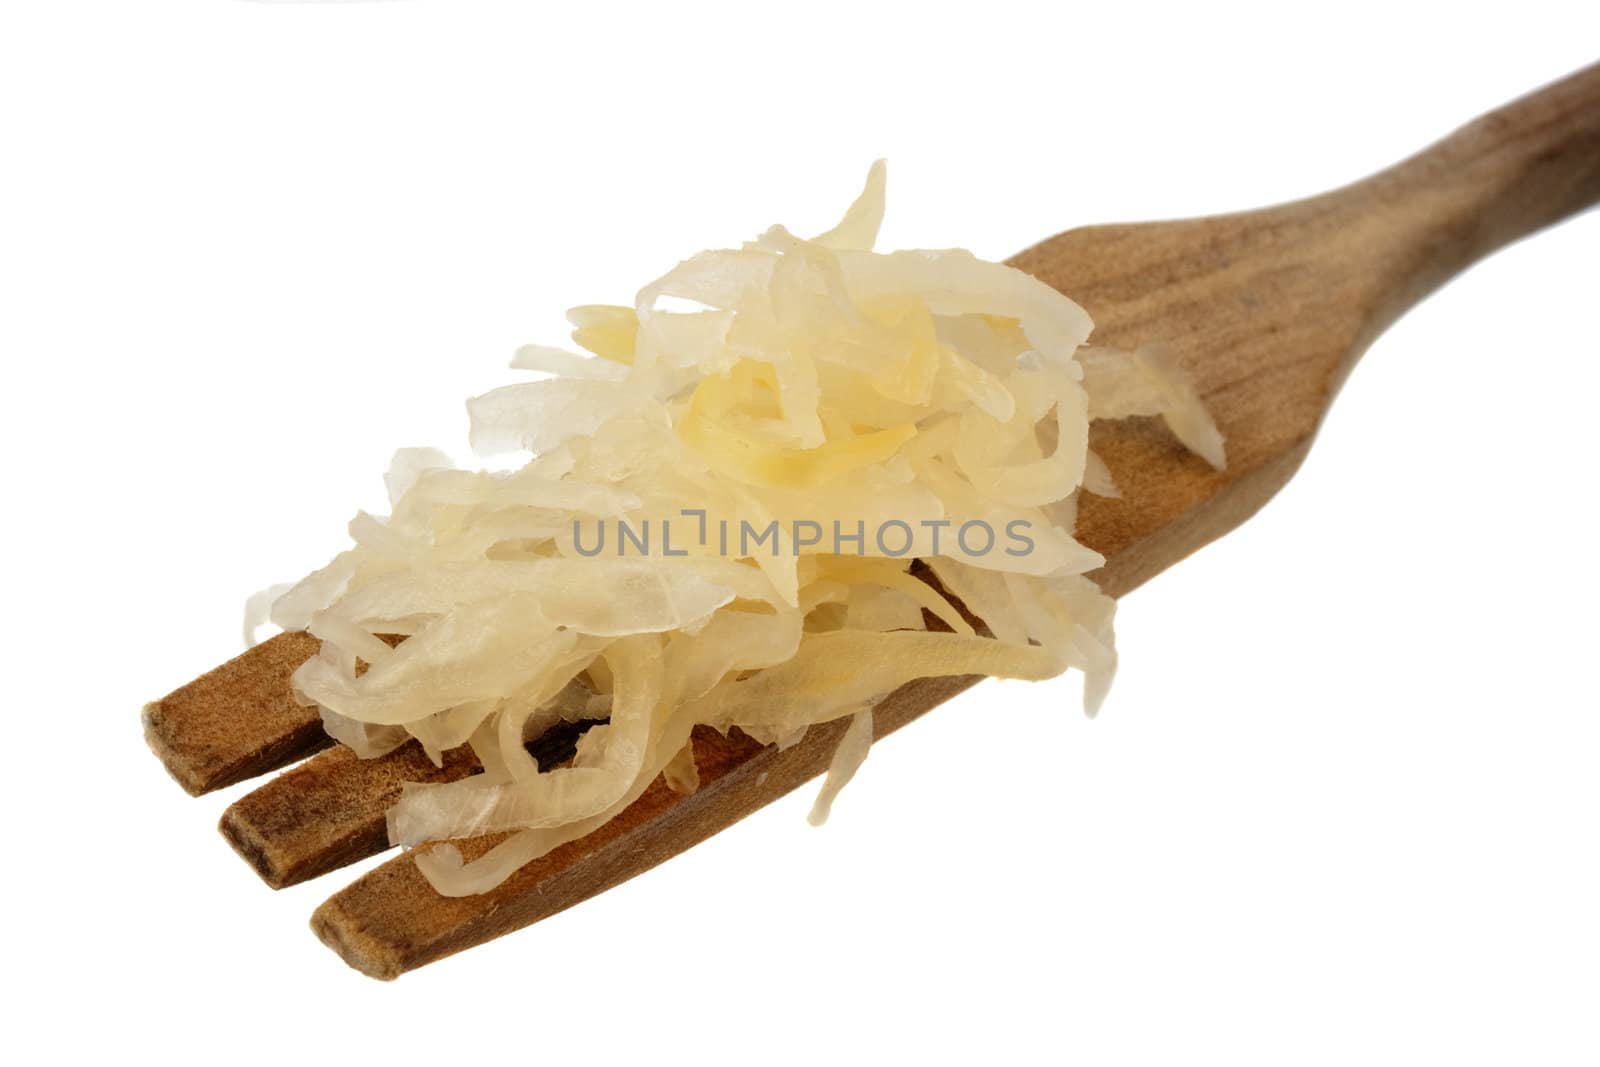 sauerkraut on a wooden fork by PixelsAway